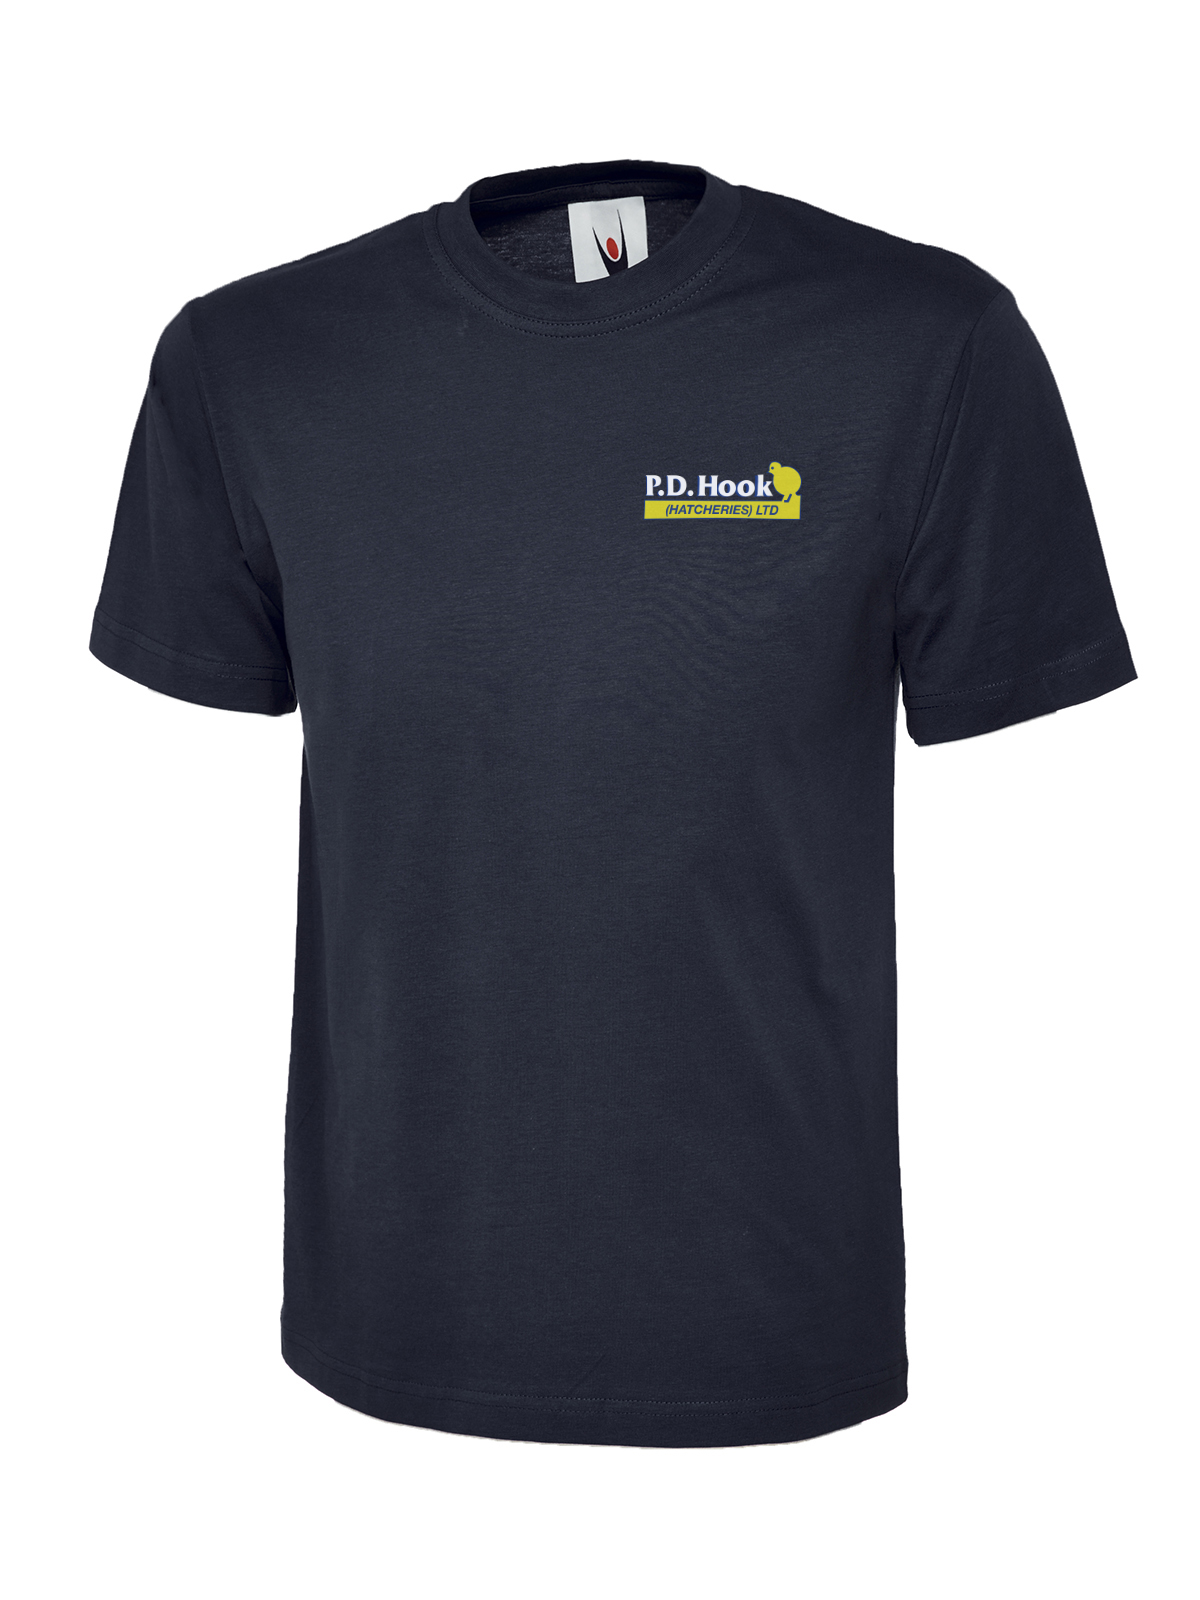 P D Hook (Hatcheries) Ltd - T-Shirt, Navy - Size Small